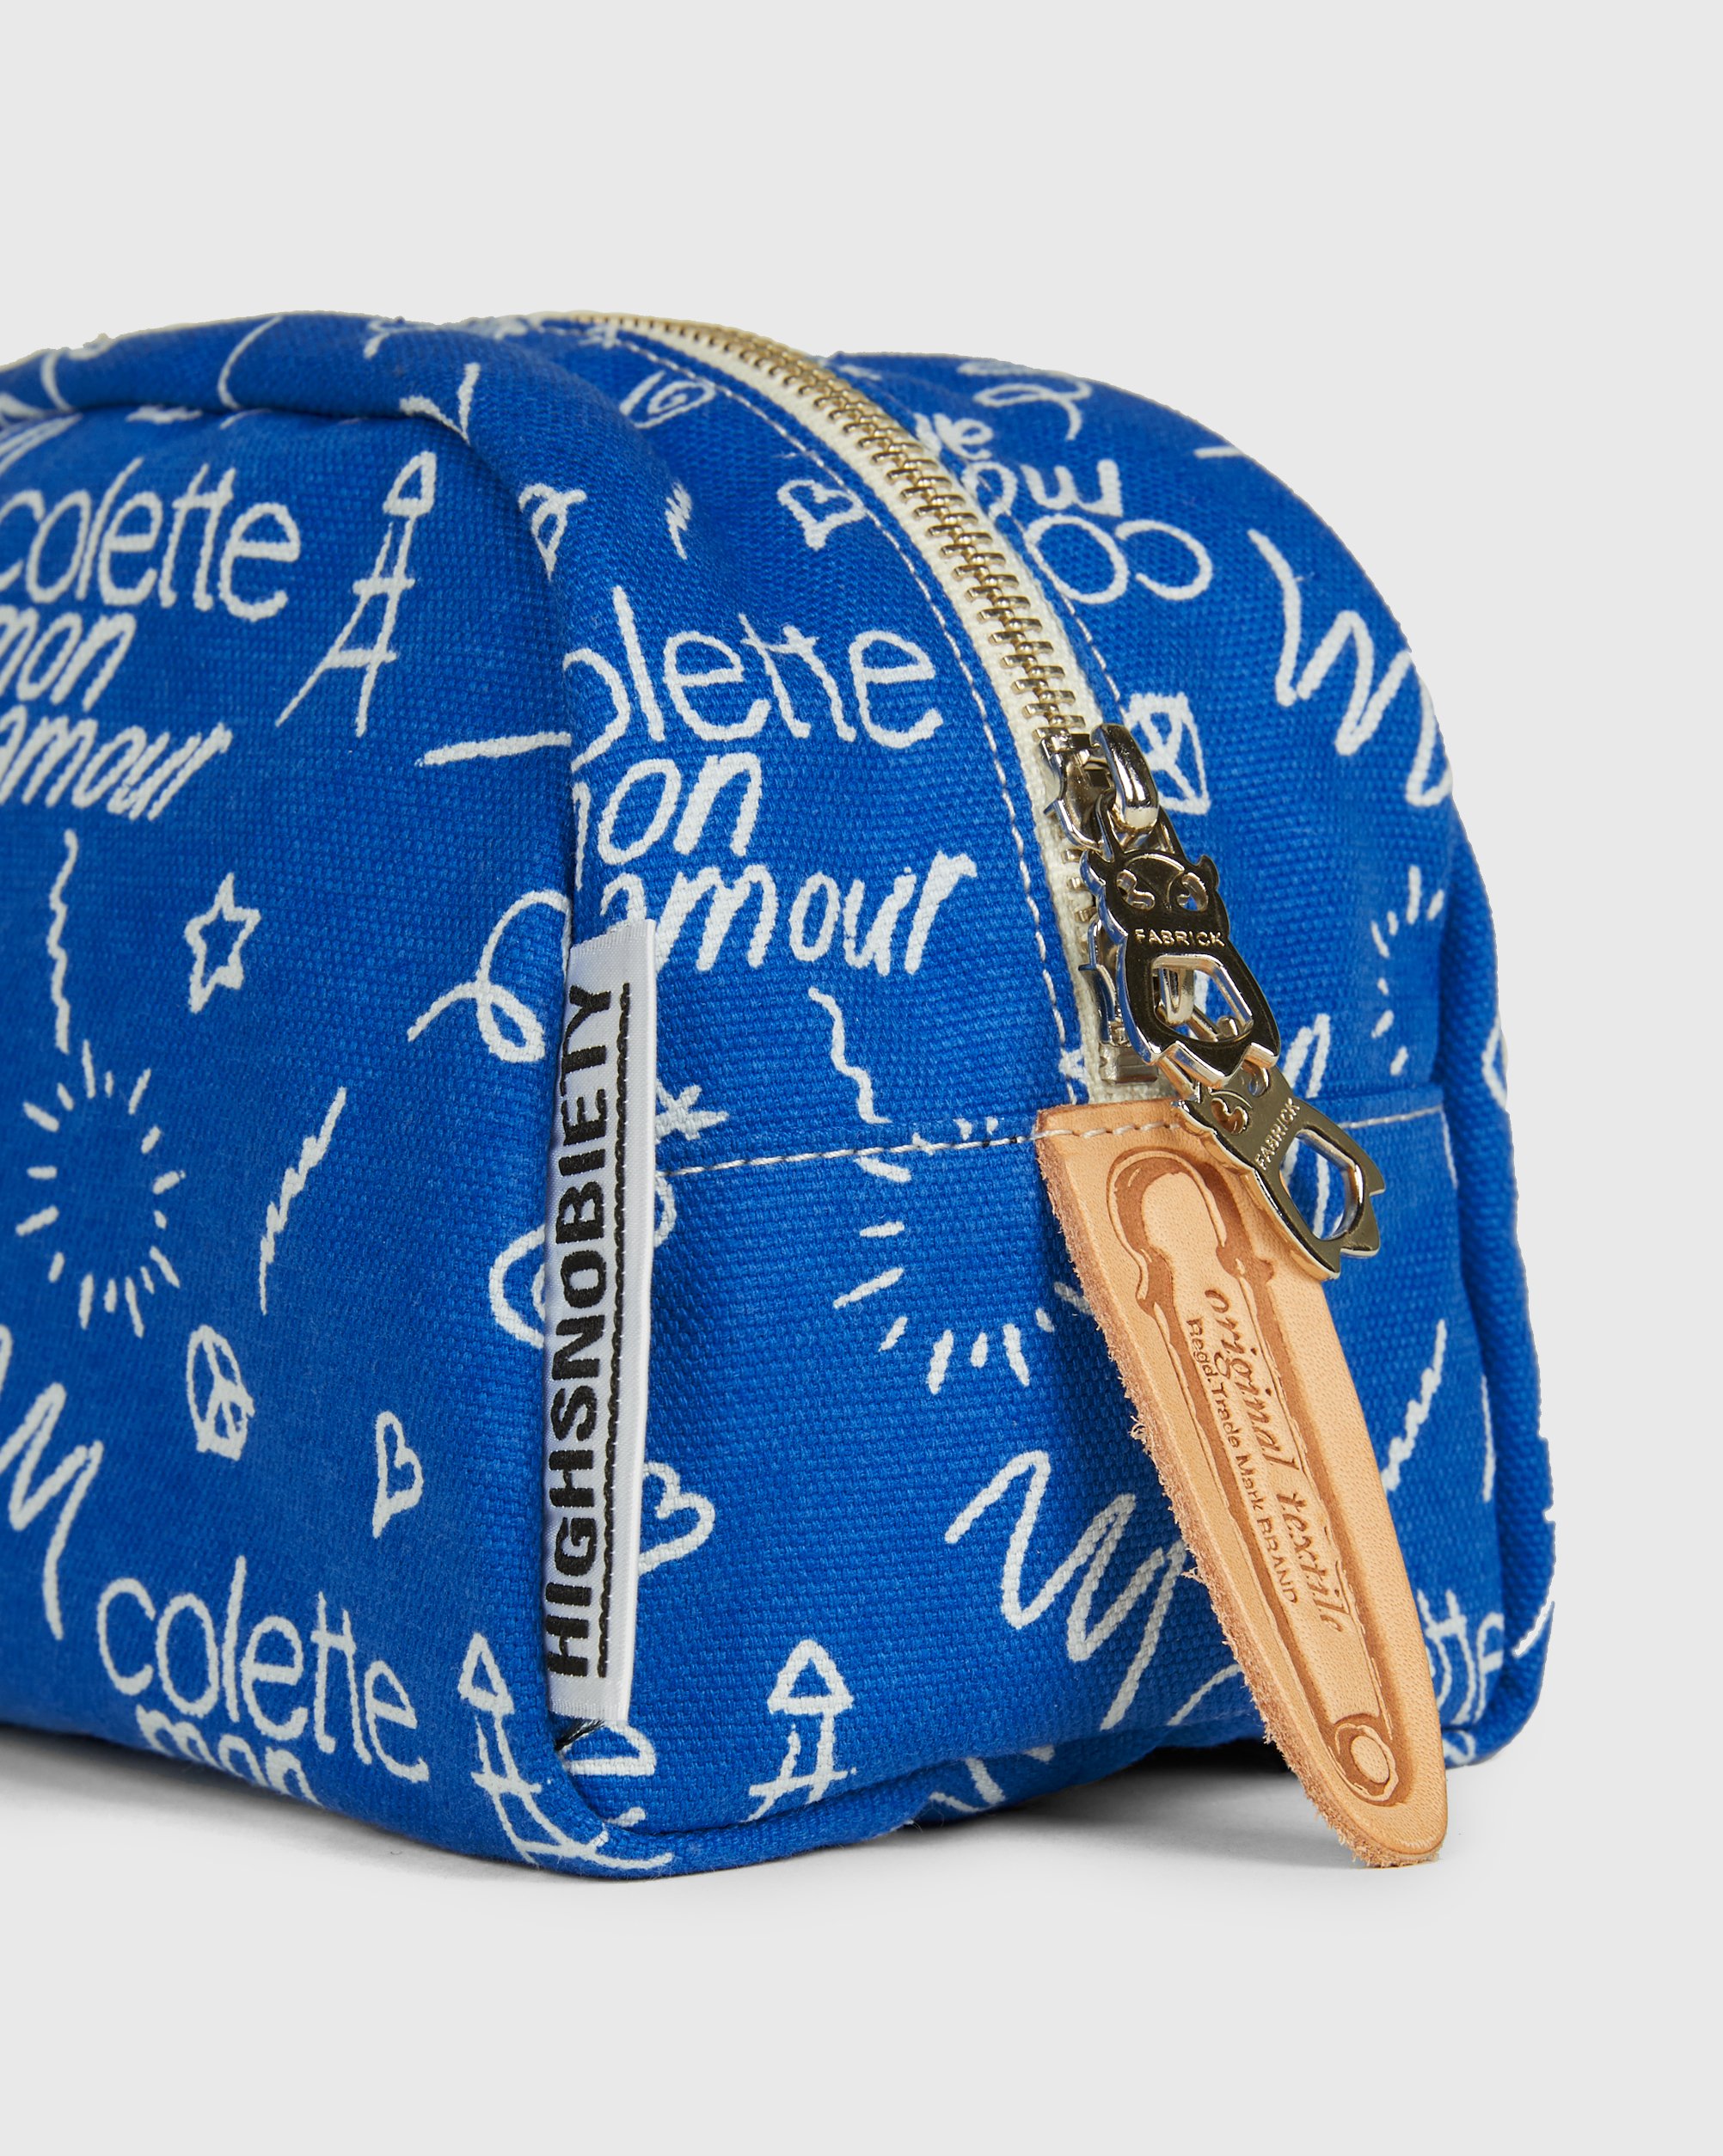 Colette Mon Amour - FABRICK Travel Pouch Blue - Accessories - Blue - Image 3